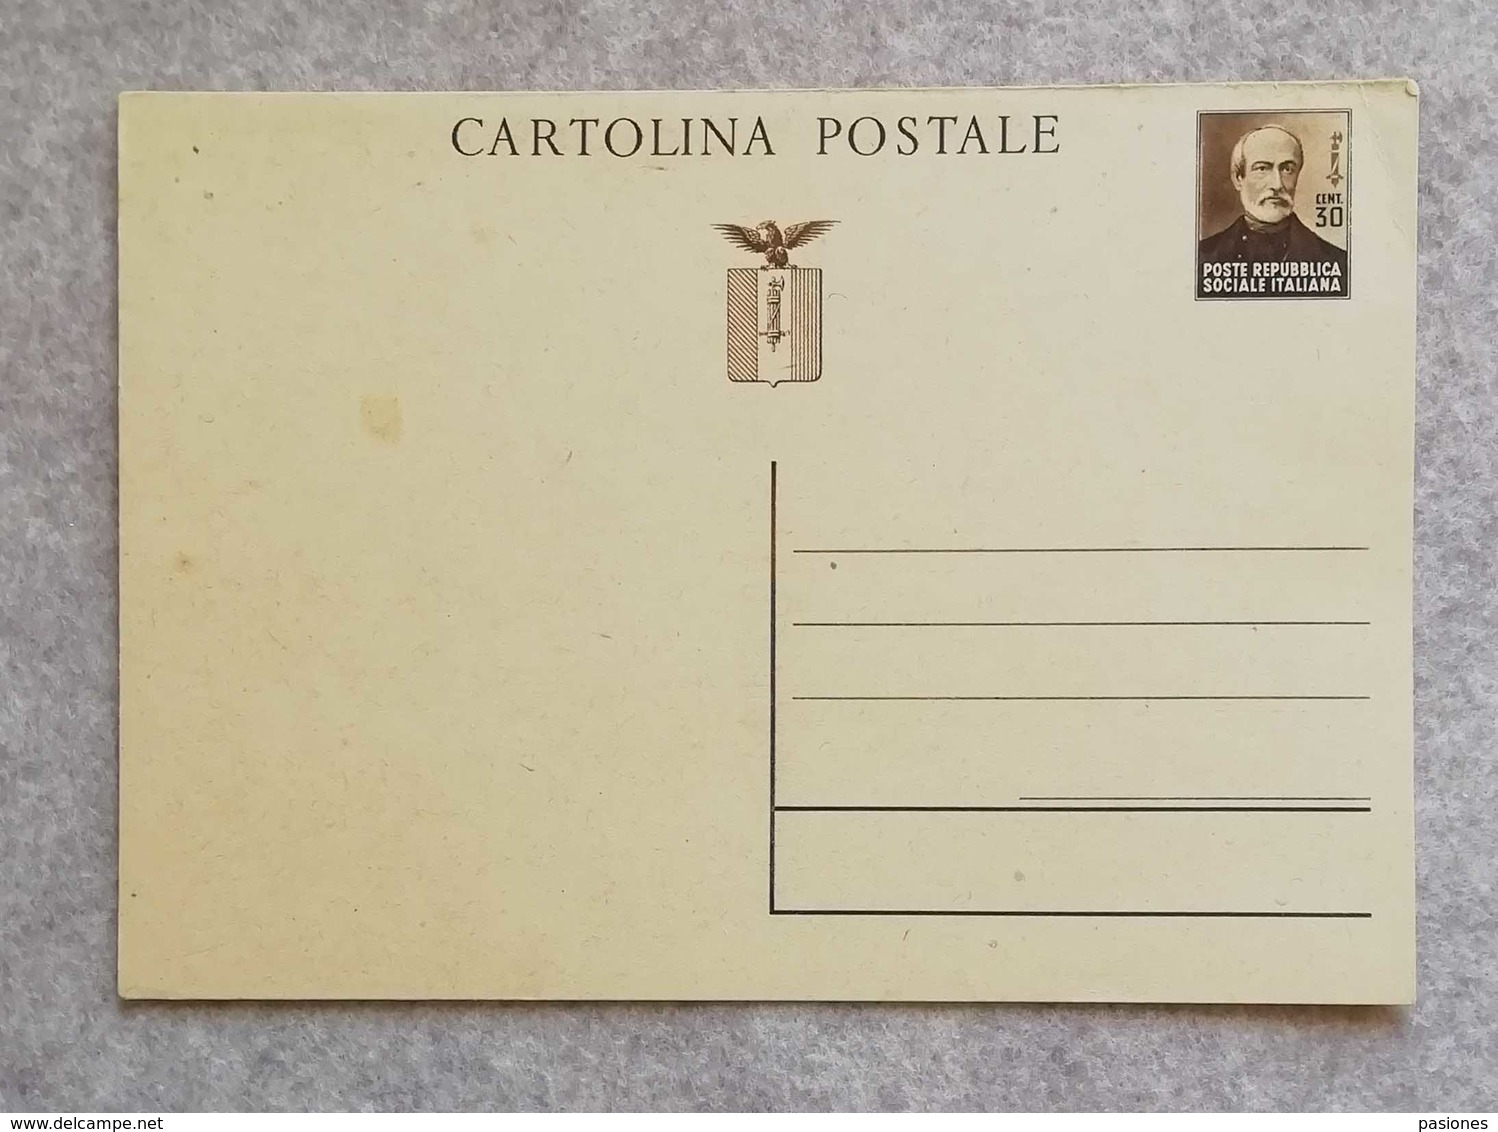 Cartolina Postale Da 30 Cent. "Giuseppe Mazzini" RSI - Non Viaggiata - Interi Postali